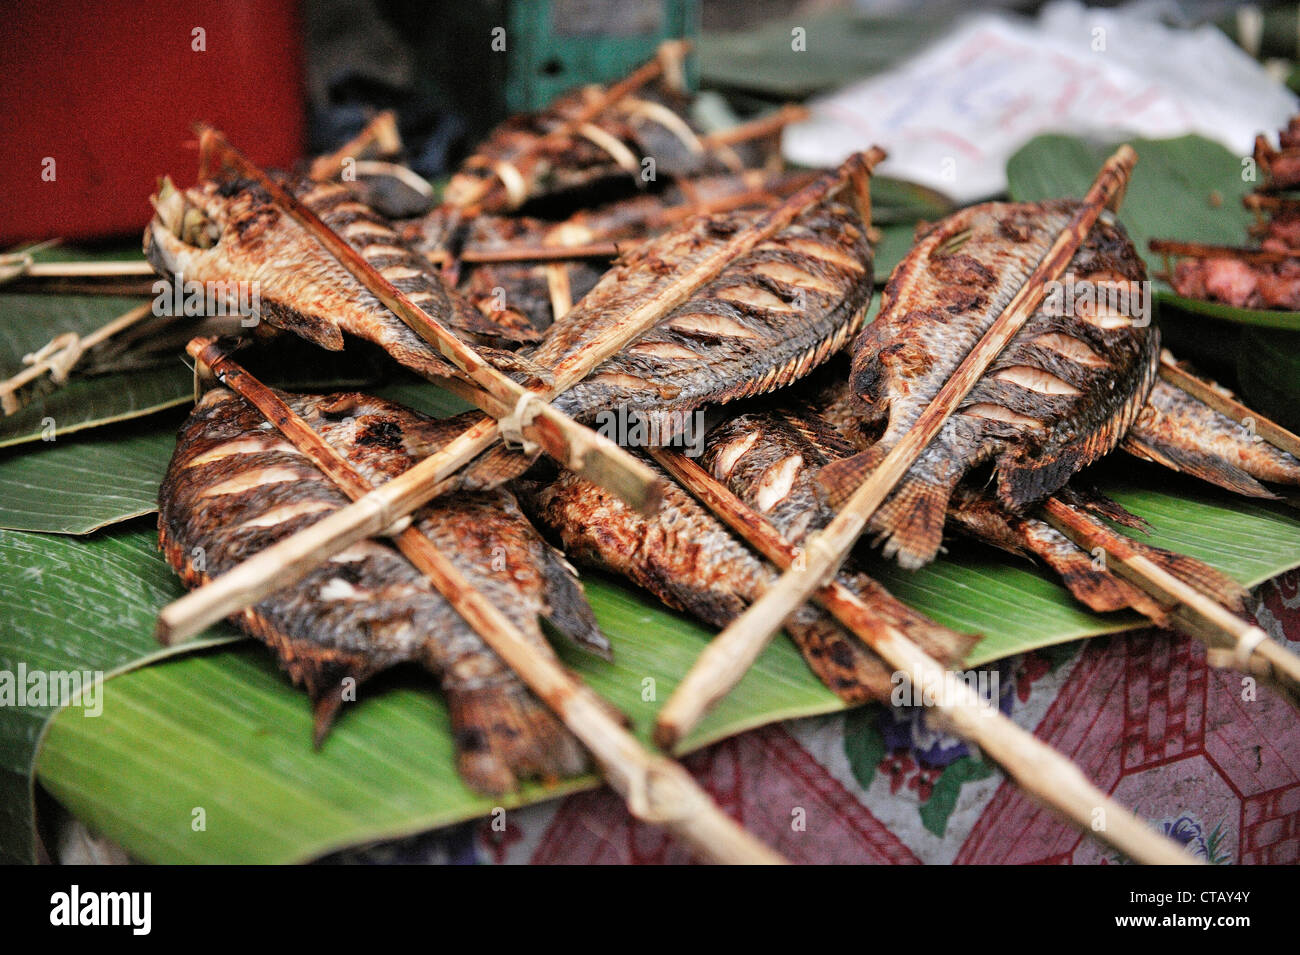 Fish barbecue at local market, Luang Prabang, Laos Stock Photo